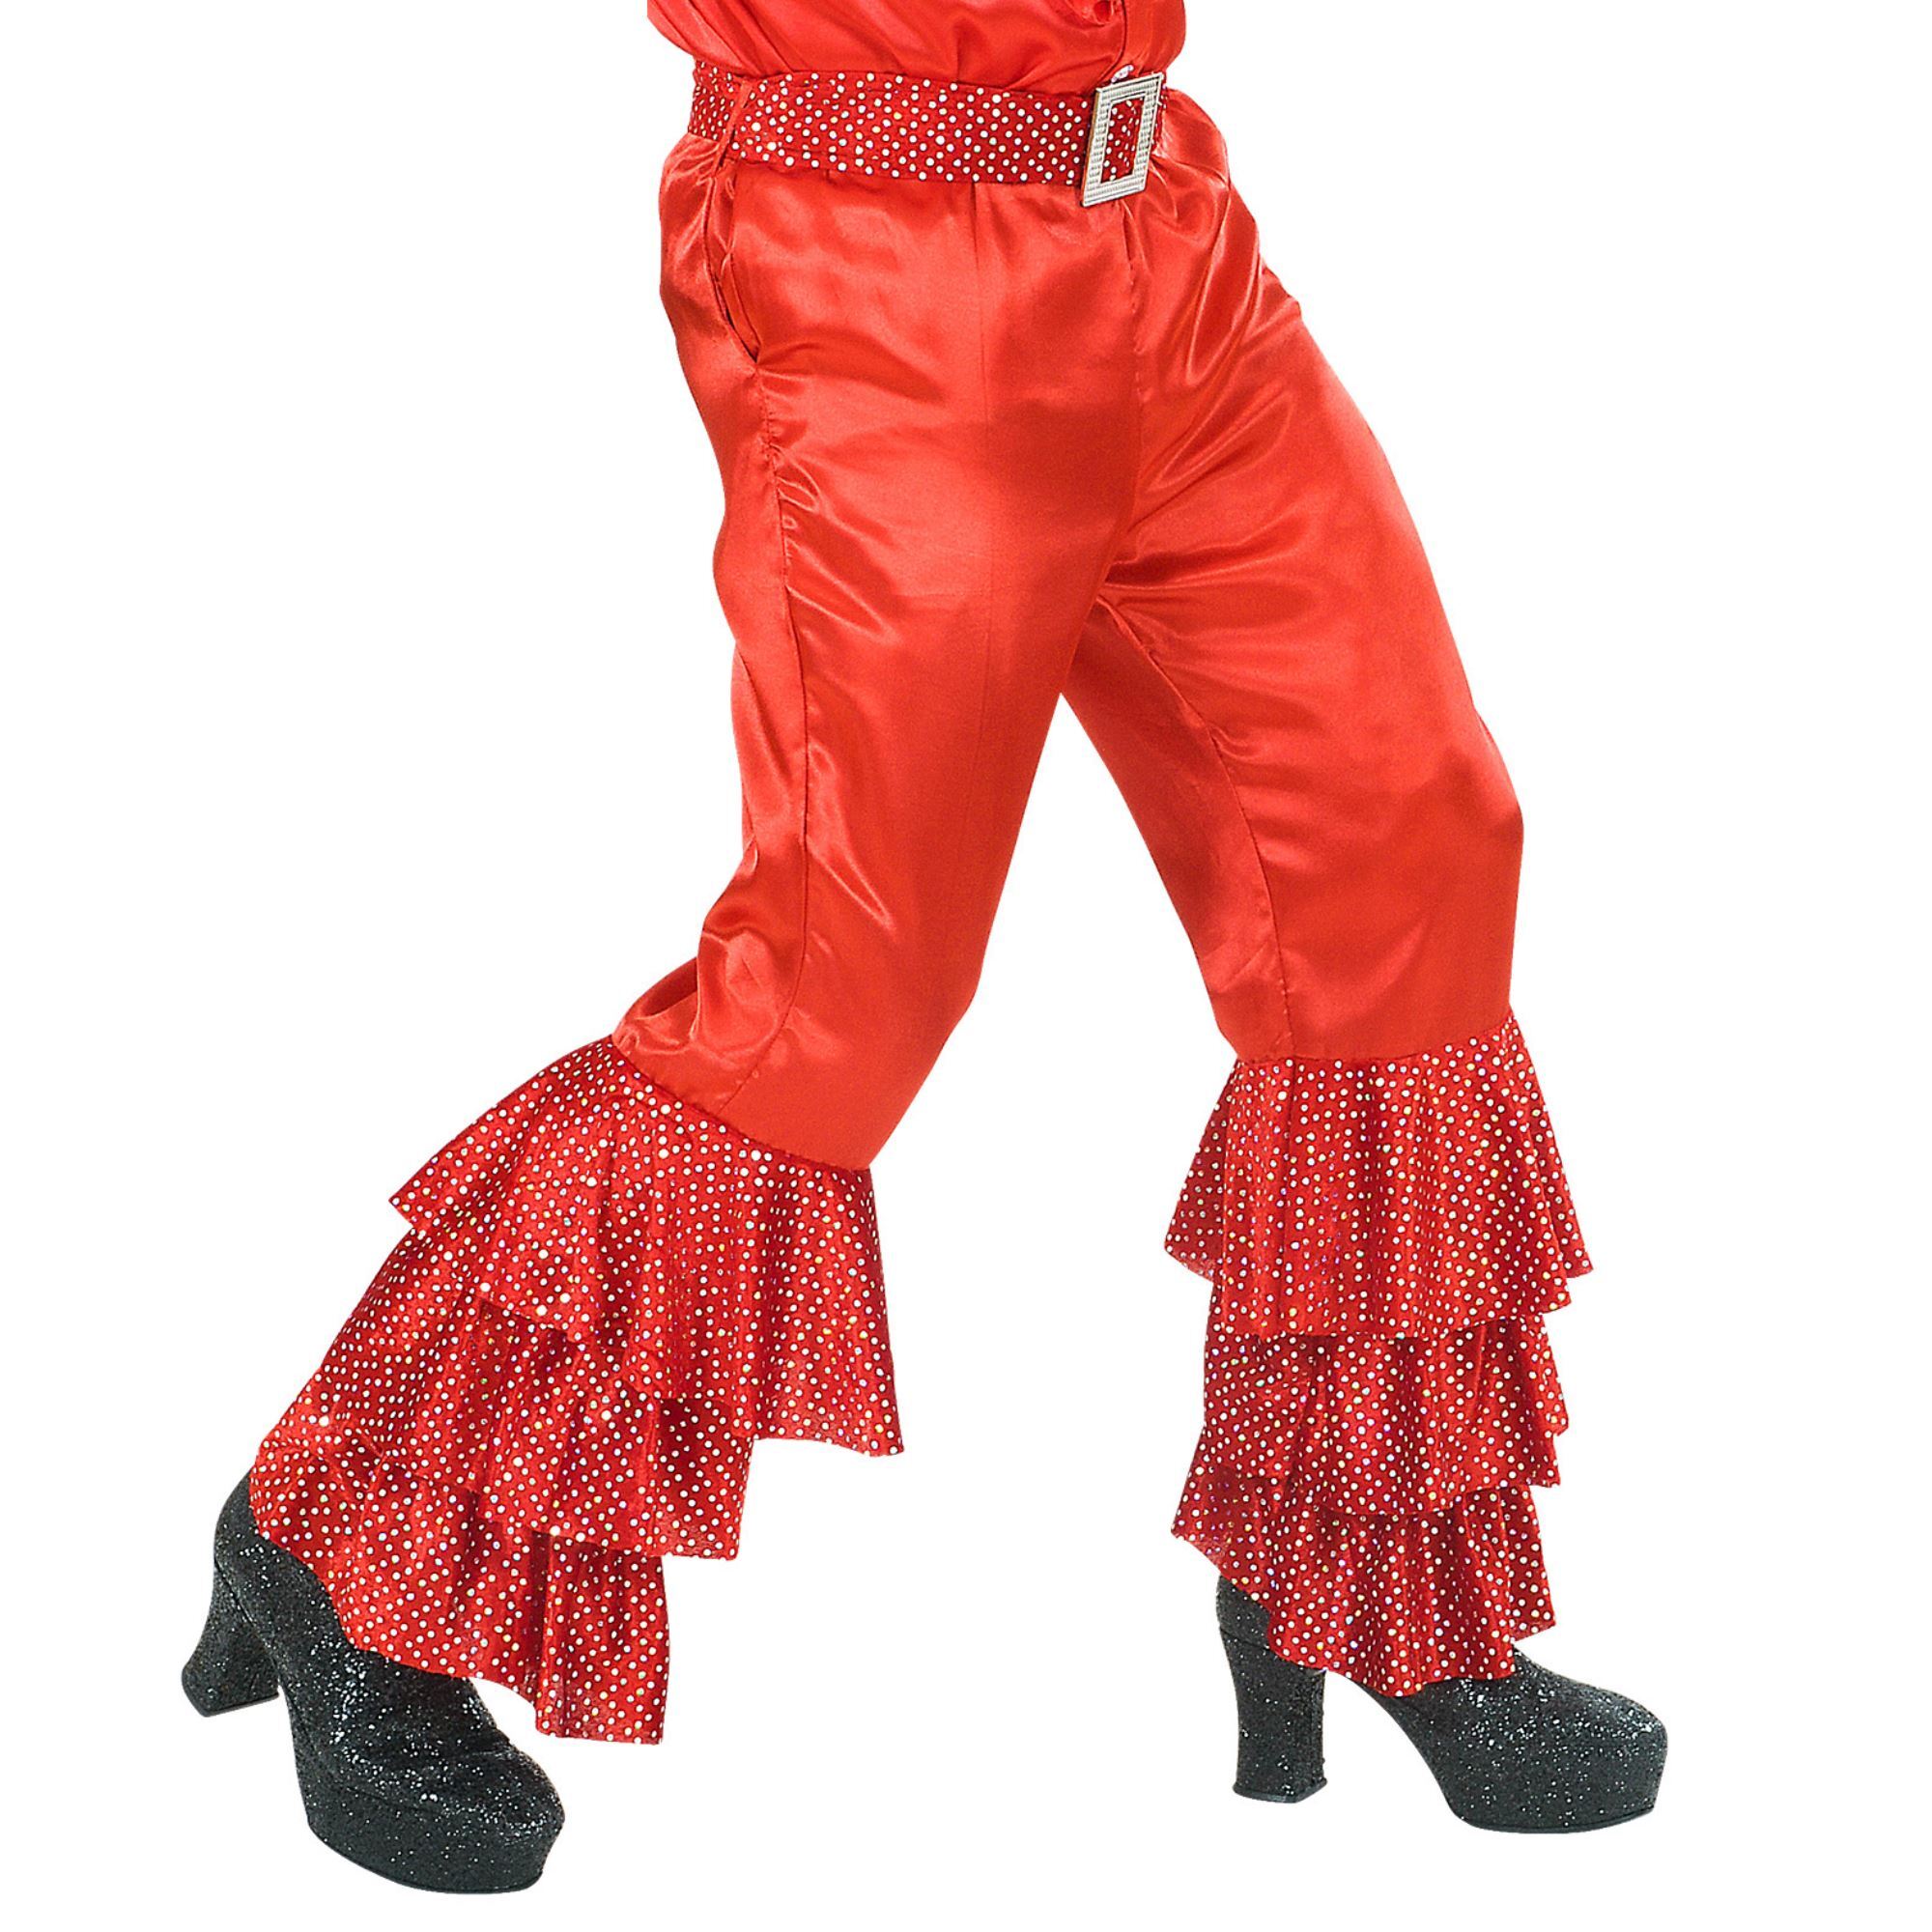 rode disco broek met pailetten en riem